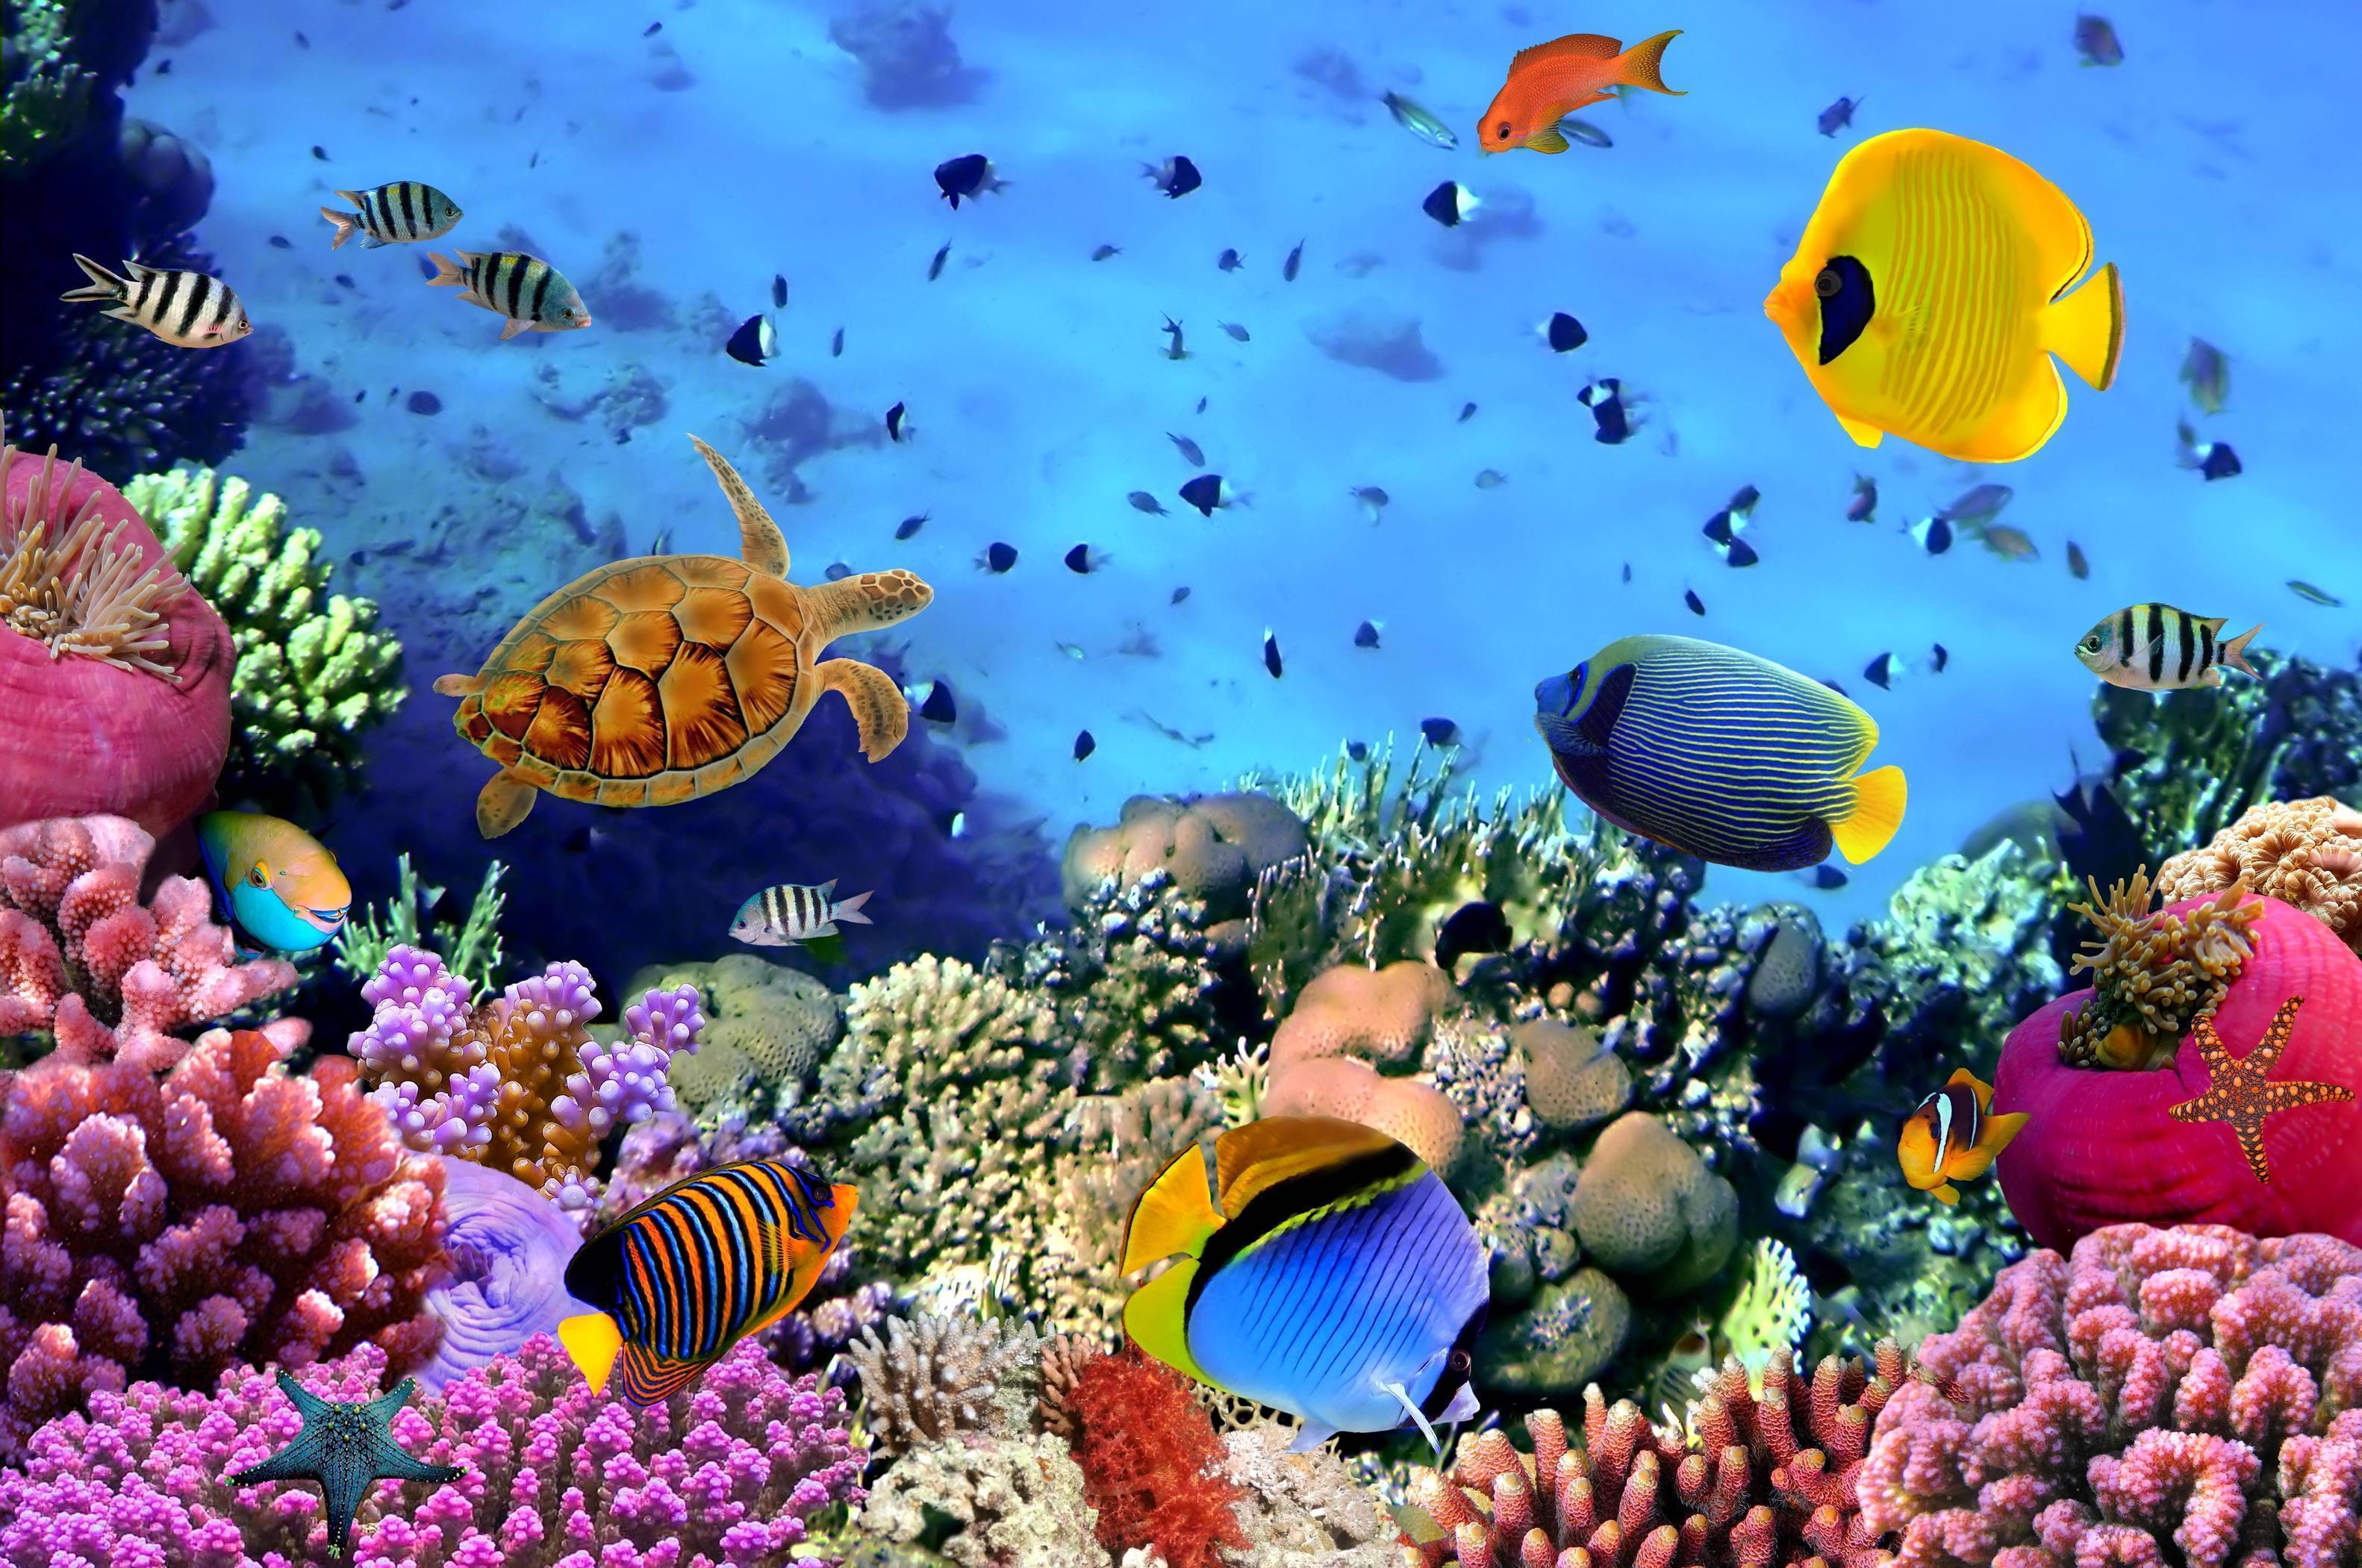 Hình nền chủ đề dưới nước: Bạn là một người yêu thích vẻ đẹp của đại dương bao la và những sinh vật sống dưới lòng biển? Hãy cùng đắm mình trong thế giới dưới nước với các hình nền chủ đề đầy màu sắc và độc đáo. Chọn cho mình một hình nền ấn tượng và cùng truyền tải sự yêu thích với bạn bè nhé!